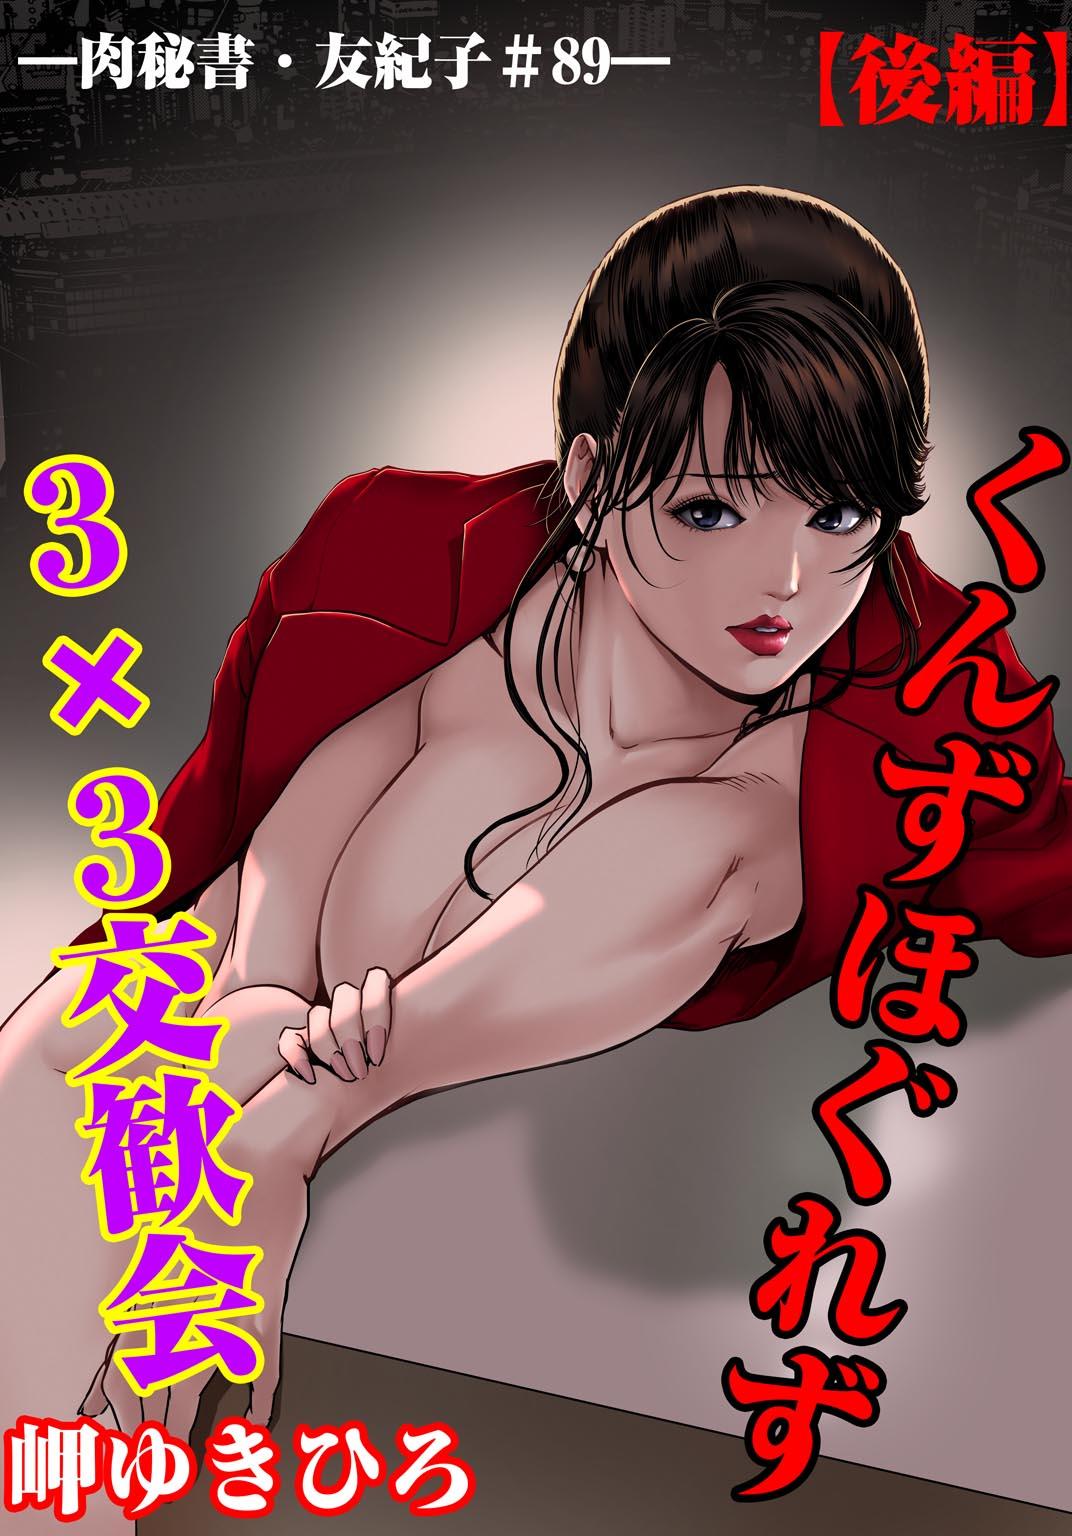 Nikuhisyo Yukiko 28 49